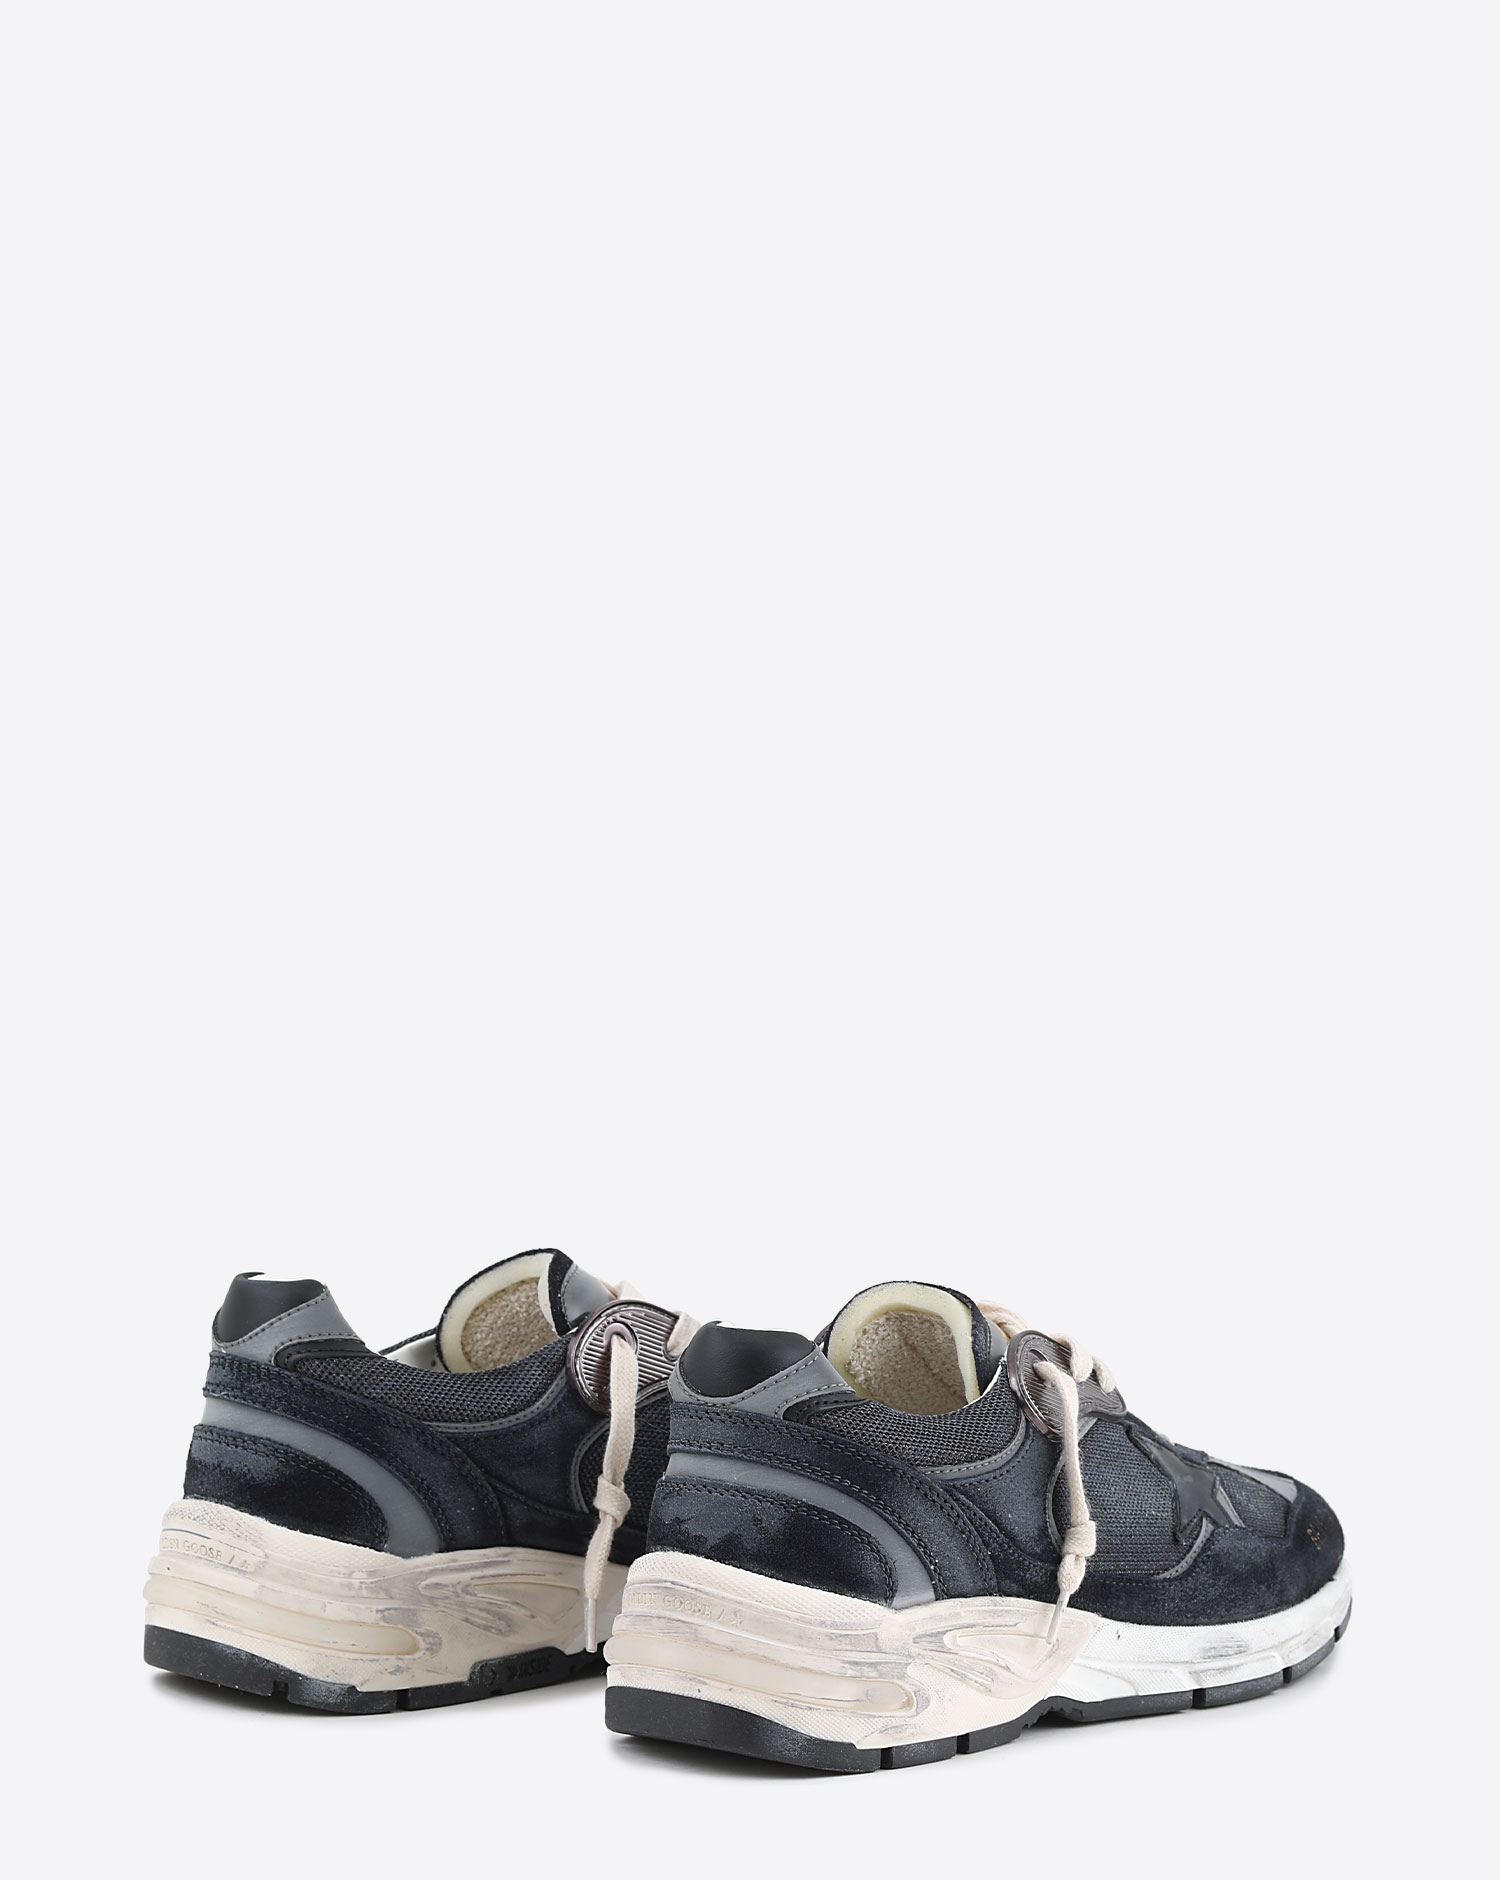 Sneakers Running Dad bleues foncées et grises étoile noir 50580 Golden Goose homme. Vu de dos.